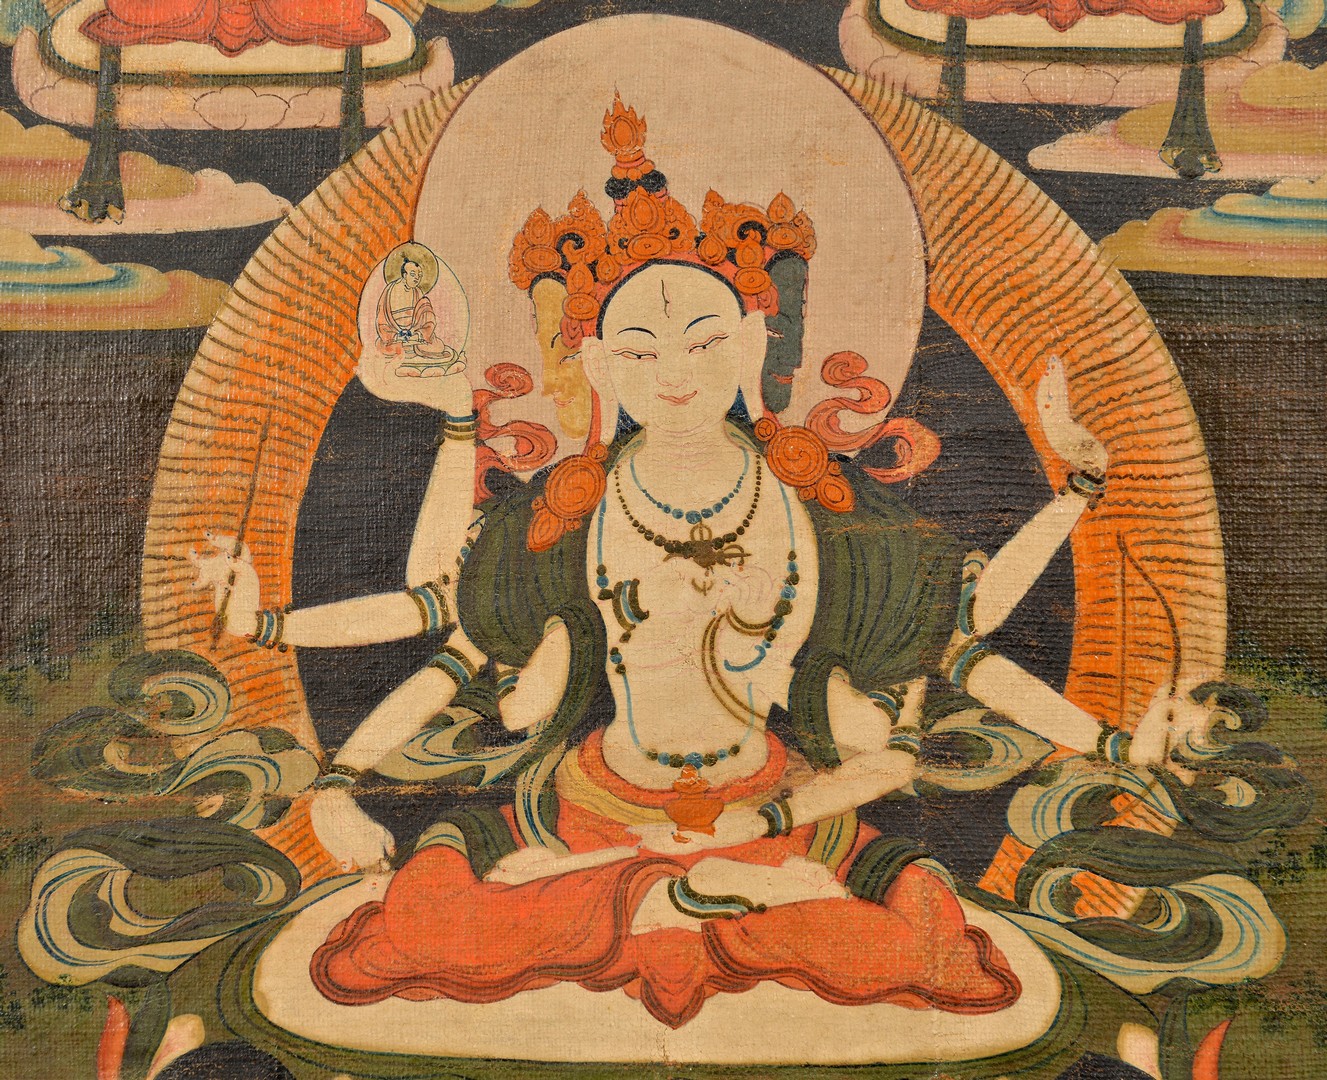 Lot 32: Tibetan Thangka, Ushnishavijaya